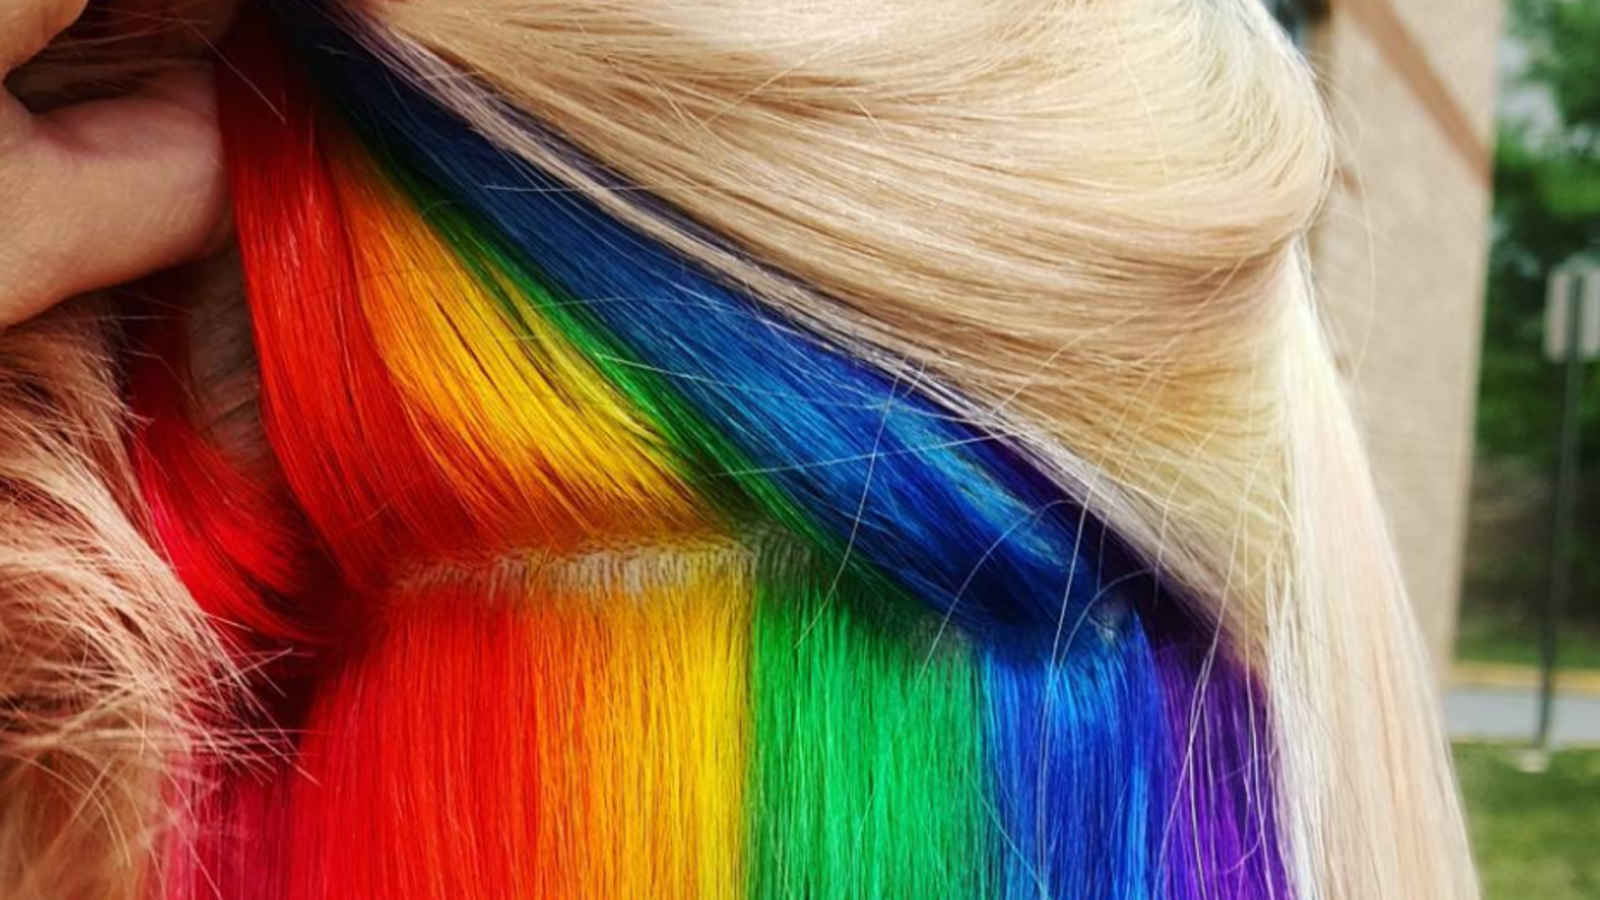 Hidden Rainbow Hair Trend - Rainbow Dye Job Pictures | Marie Claire